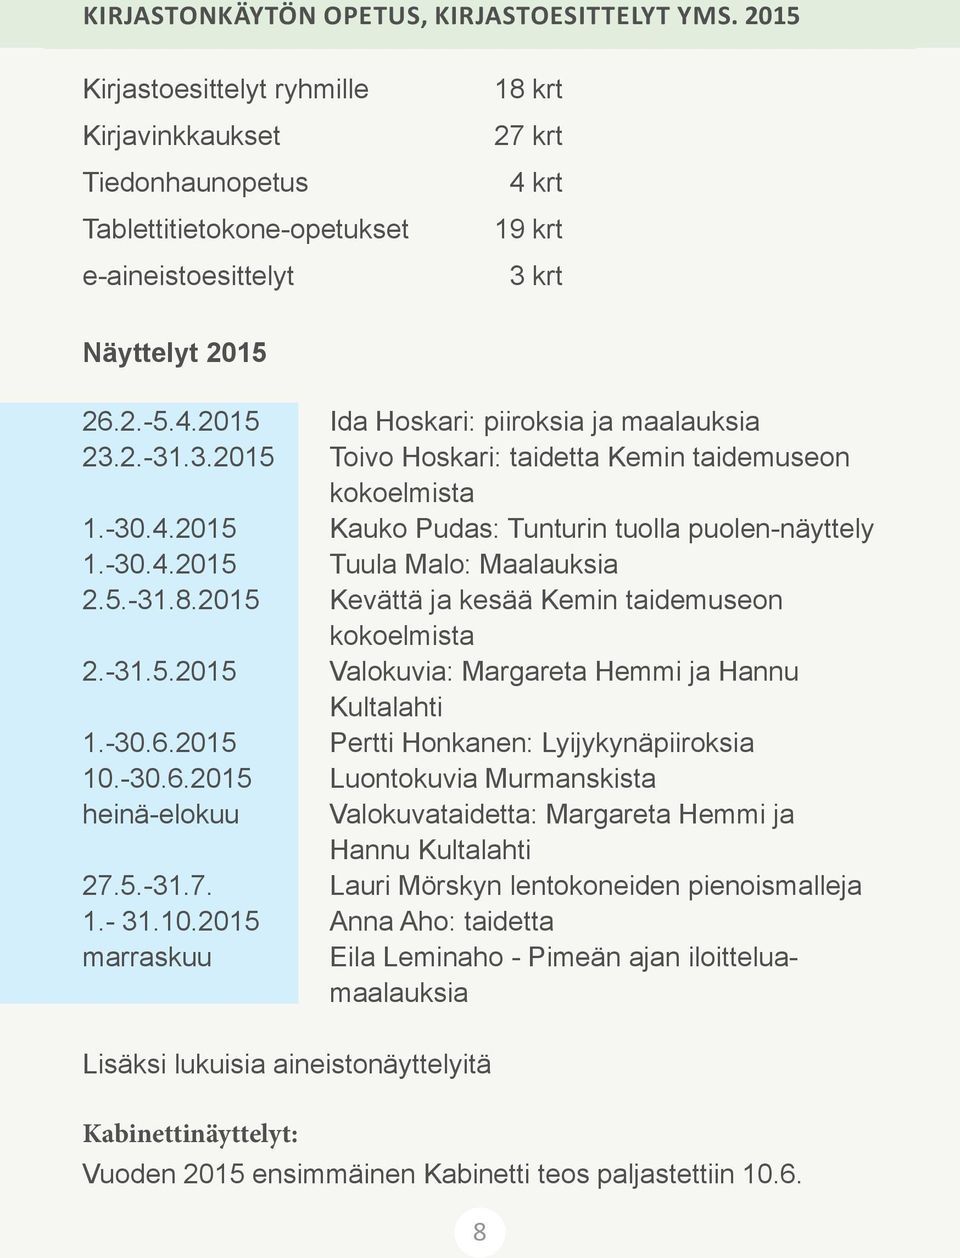 2.-31.3.2015 Toivo Hoskari: taidetta Kemin taidemuseon kokoelmista 1.-30.4.2015 Kauko Pudas: Tunturin tuolla puolen-näyttely 1.-30.4.2015 Tuula Malo: Maalauksia 2.5.-31.8.